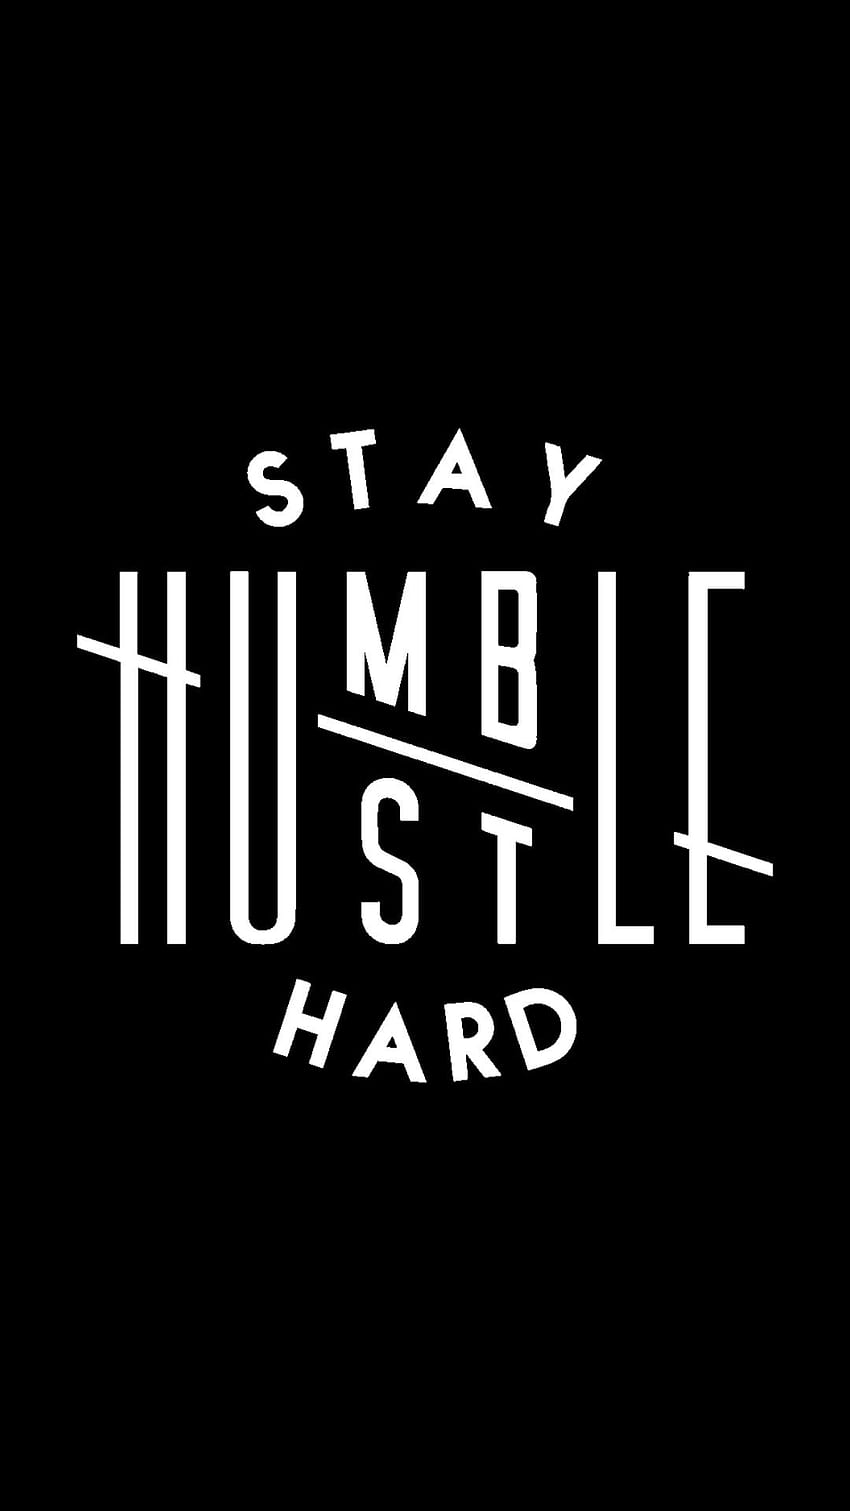 Mantenha-se humilde, trabalhe duro. Fique humilde, apresse-se, Impressões de citações engraçadas, Citações permaneça humilde, American Hustle Papel de parede de celular HD